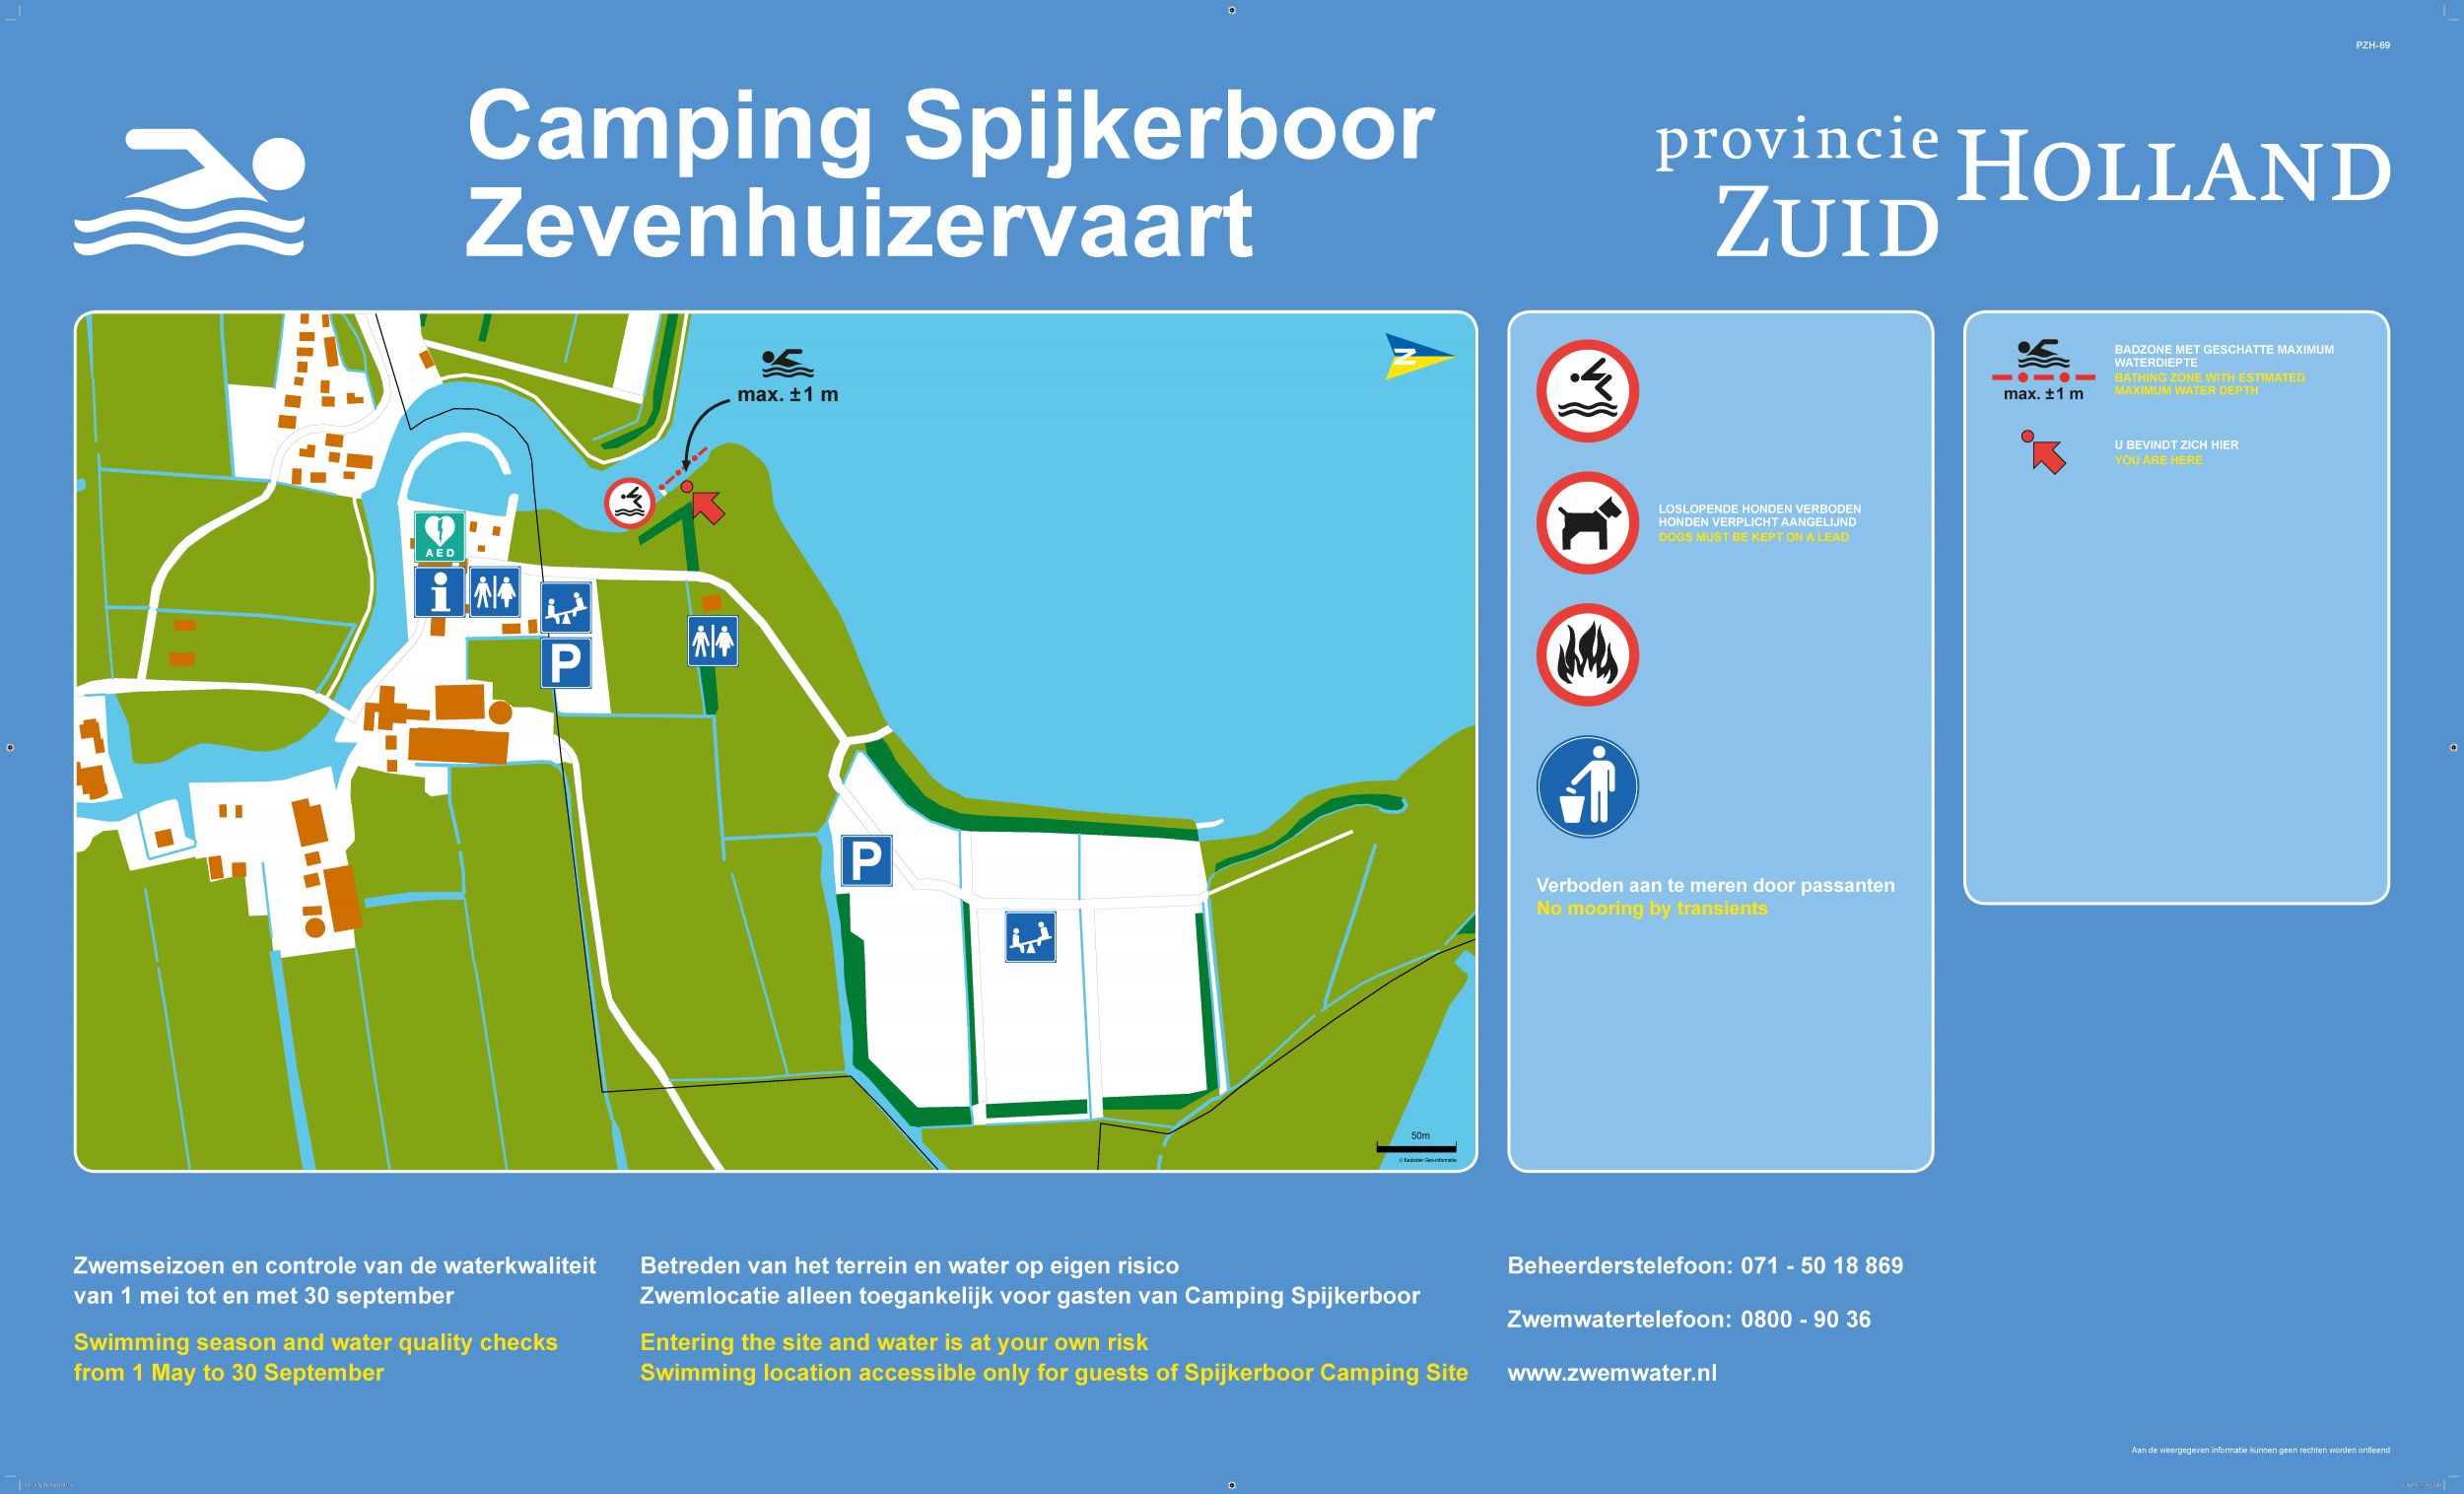 Het informatiebord bij zwemlocatie Camping Spijkerboor, Zevenhuizervaart